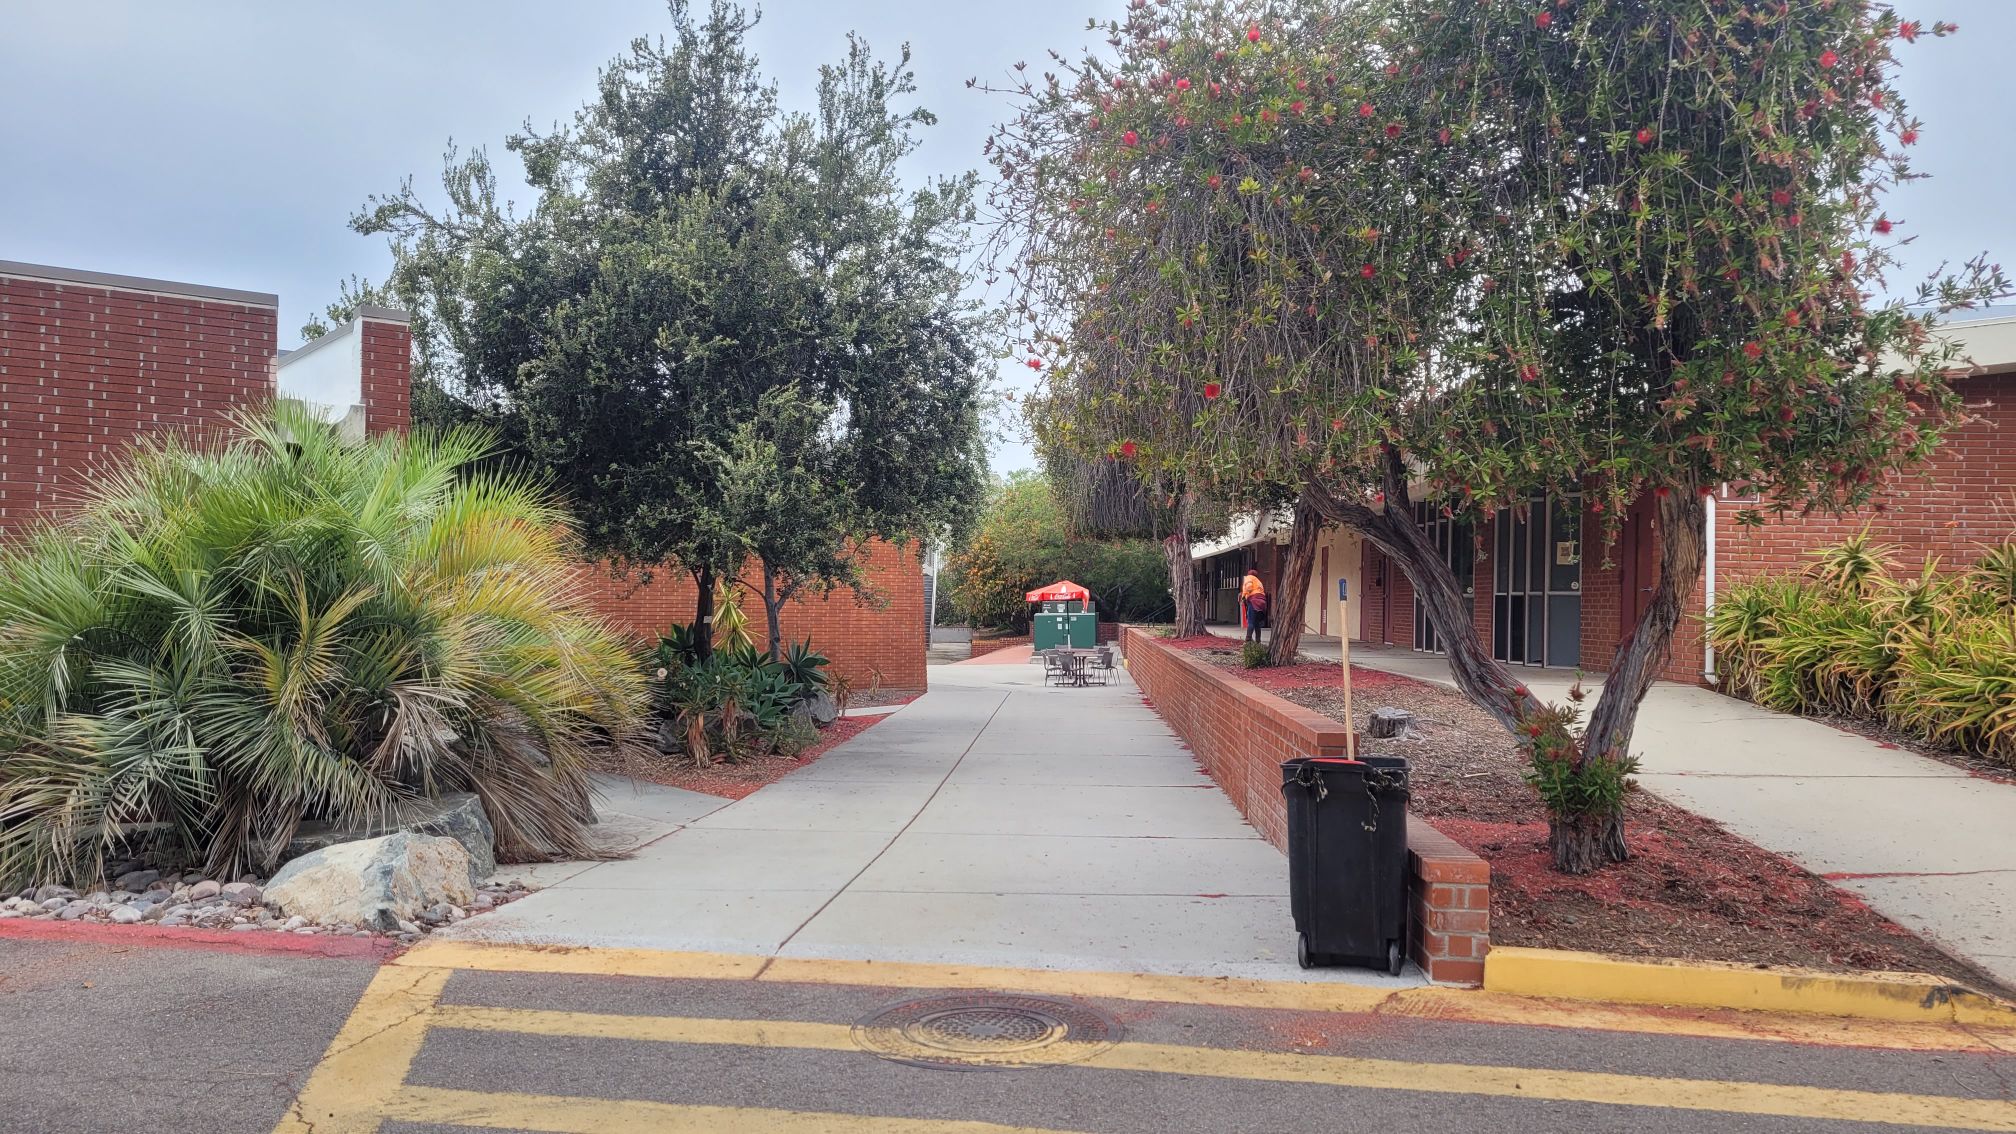 Entrance to Palomar College. (Dezare Lozano/The Telescope)